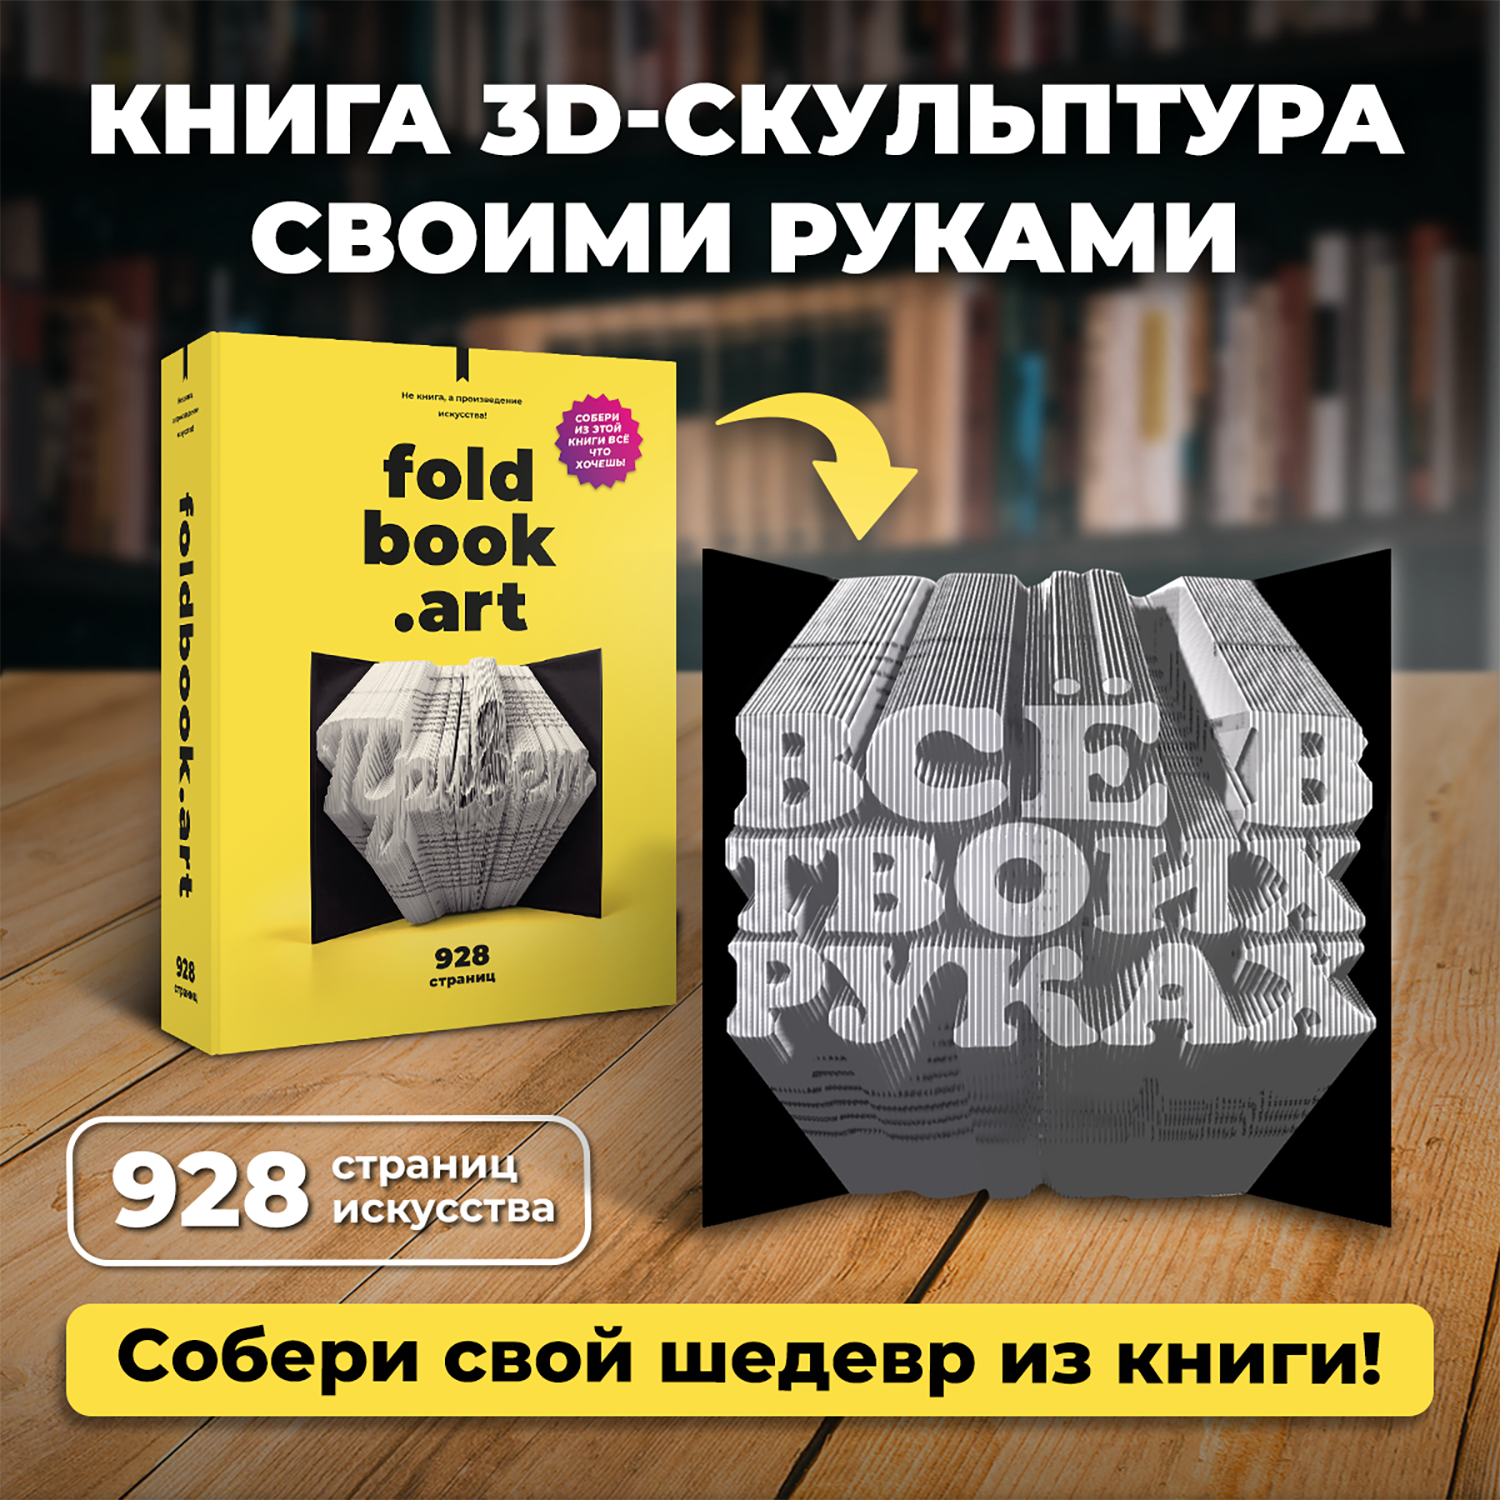 Конструктор Foldbook.art 3D бумажный в виде книги 80008 80008 - фото 4